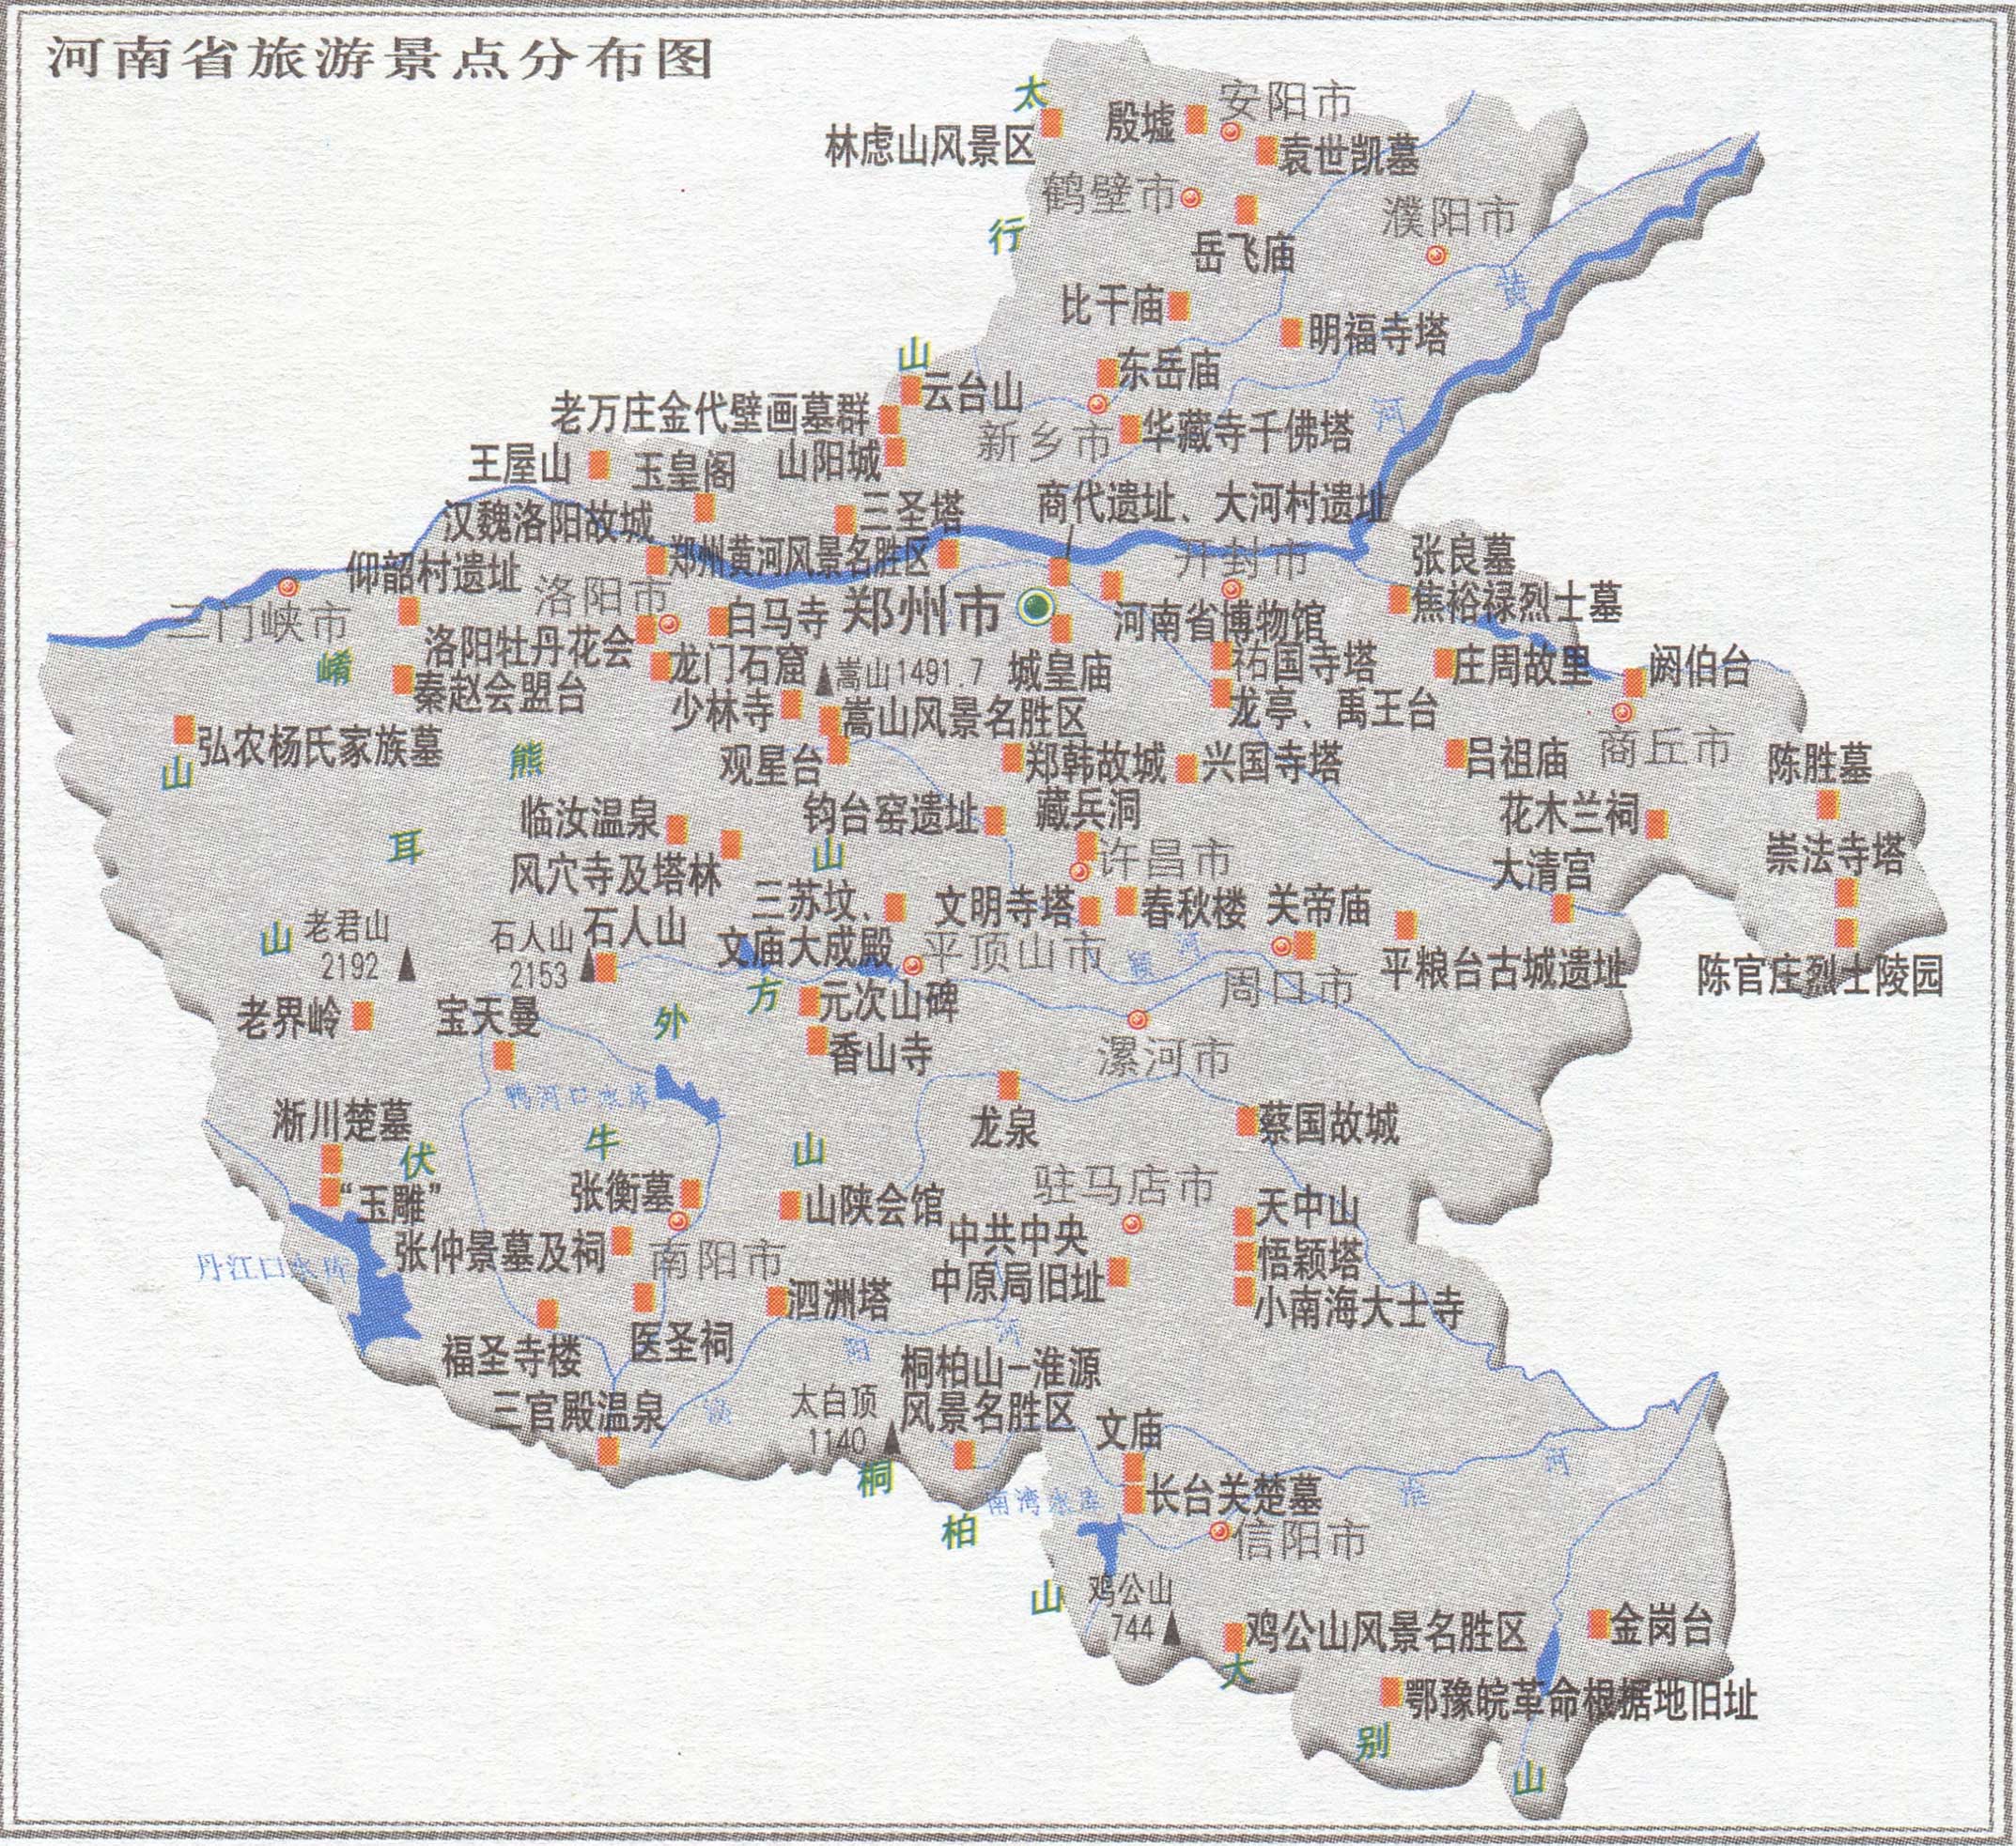 地图 专题 景点分布图  河南旅游景点分布图  分国地图 | 分省